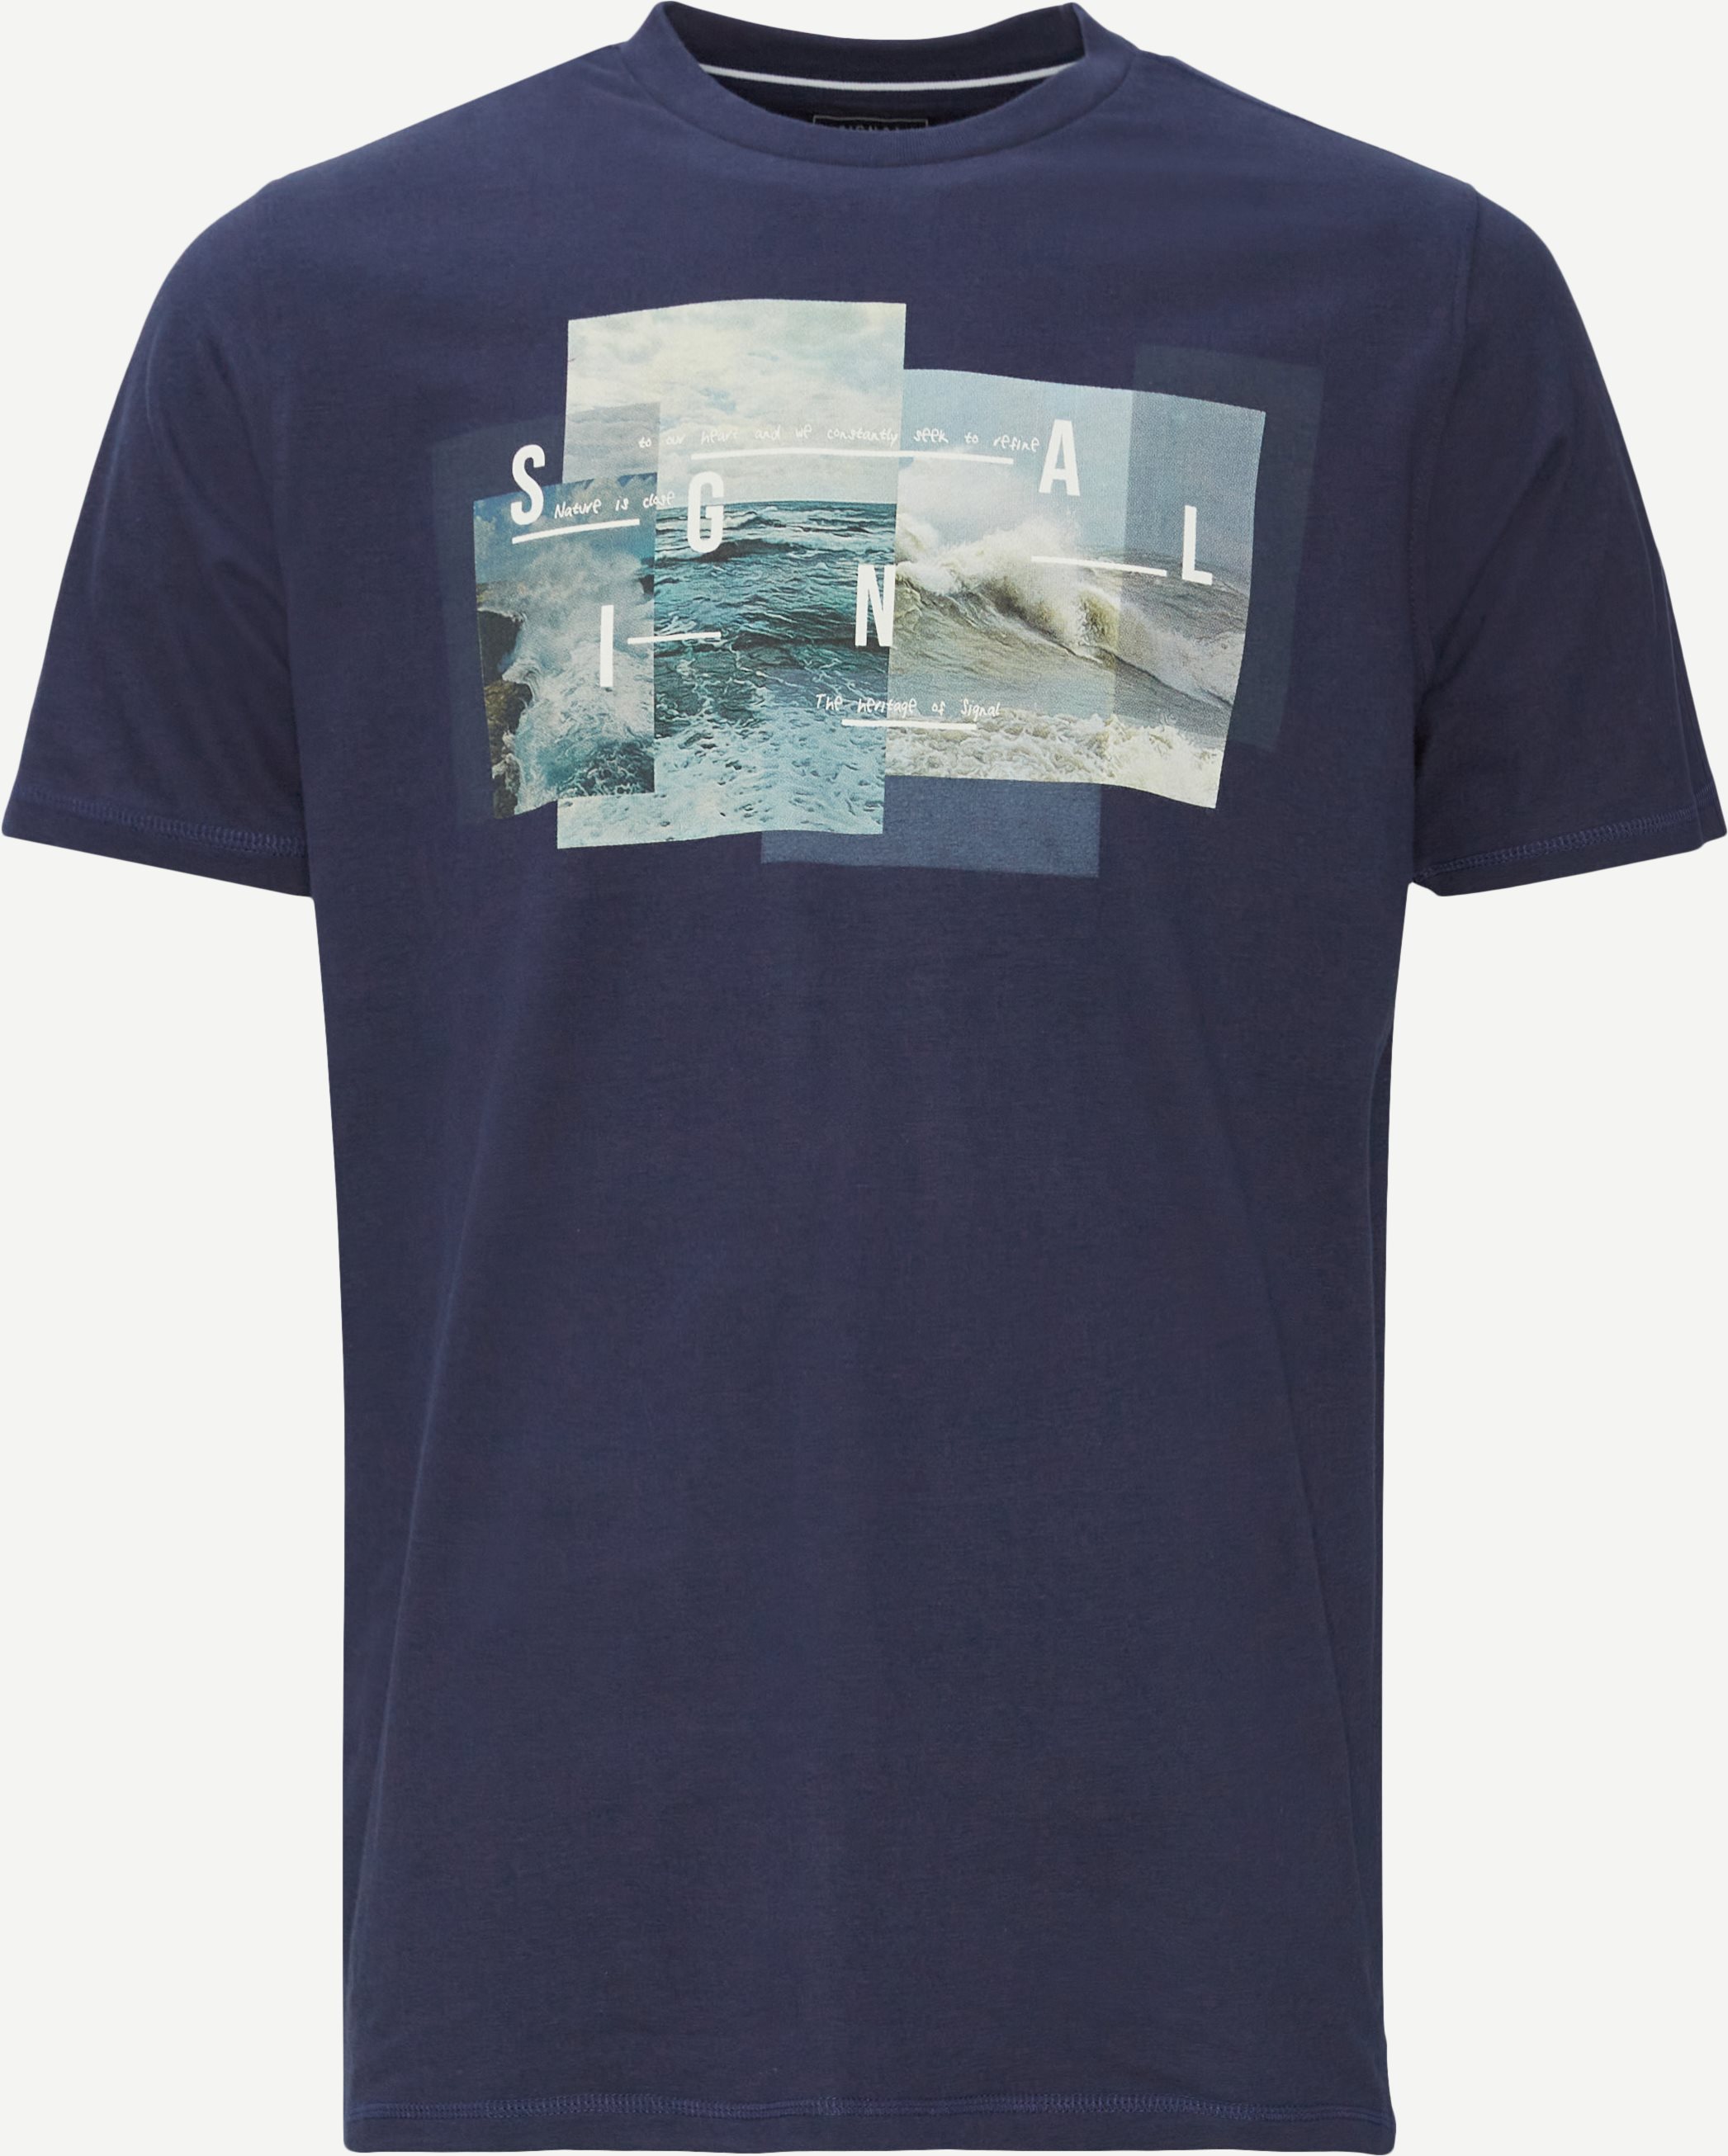 Ed Art T-shirt - T-shirts - Regular fit - Blå